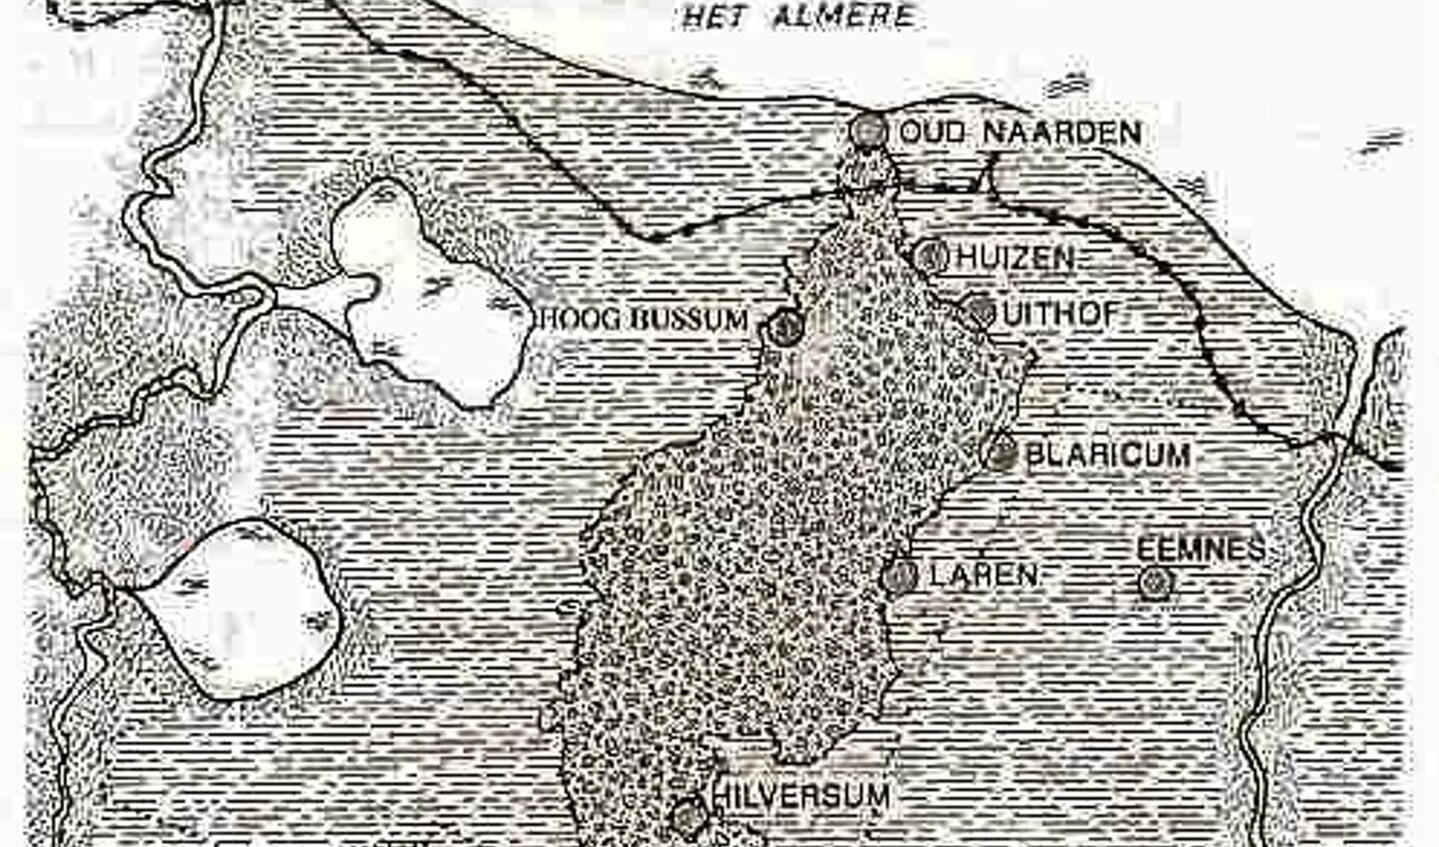 Oud Naarden, Hoog-Bussum en de overige Gooise dorpen op de stuwwal voor 1350.